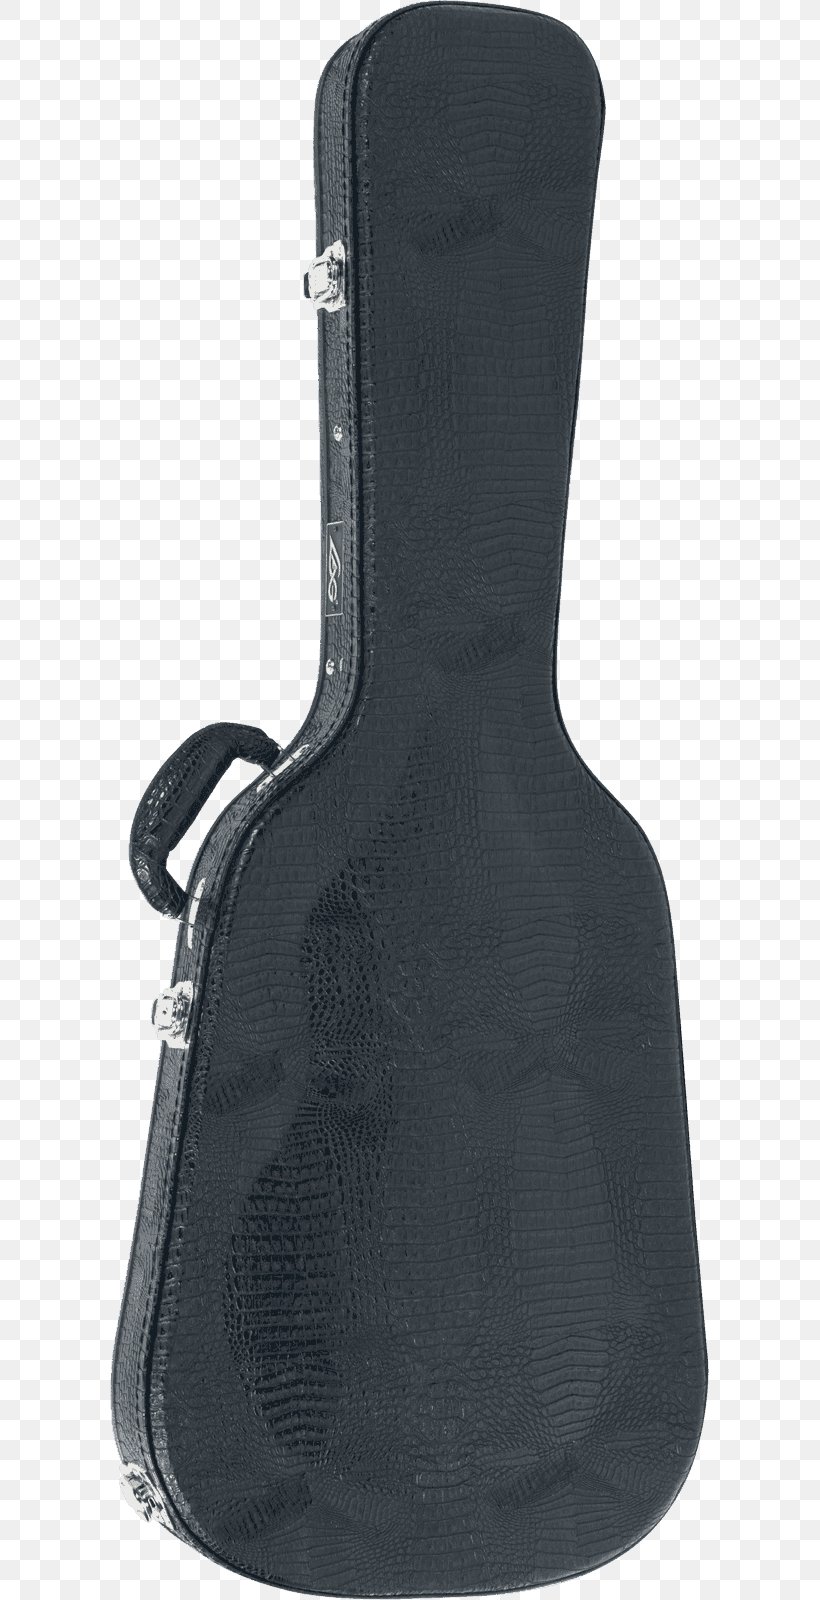 Guitar Gig Bag, PNG, 599x1600px, Guitar, Bag, Gig Bag, Musical Instrument, Plucked String Instruments Download Free